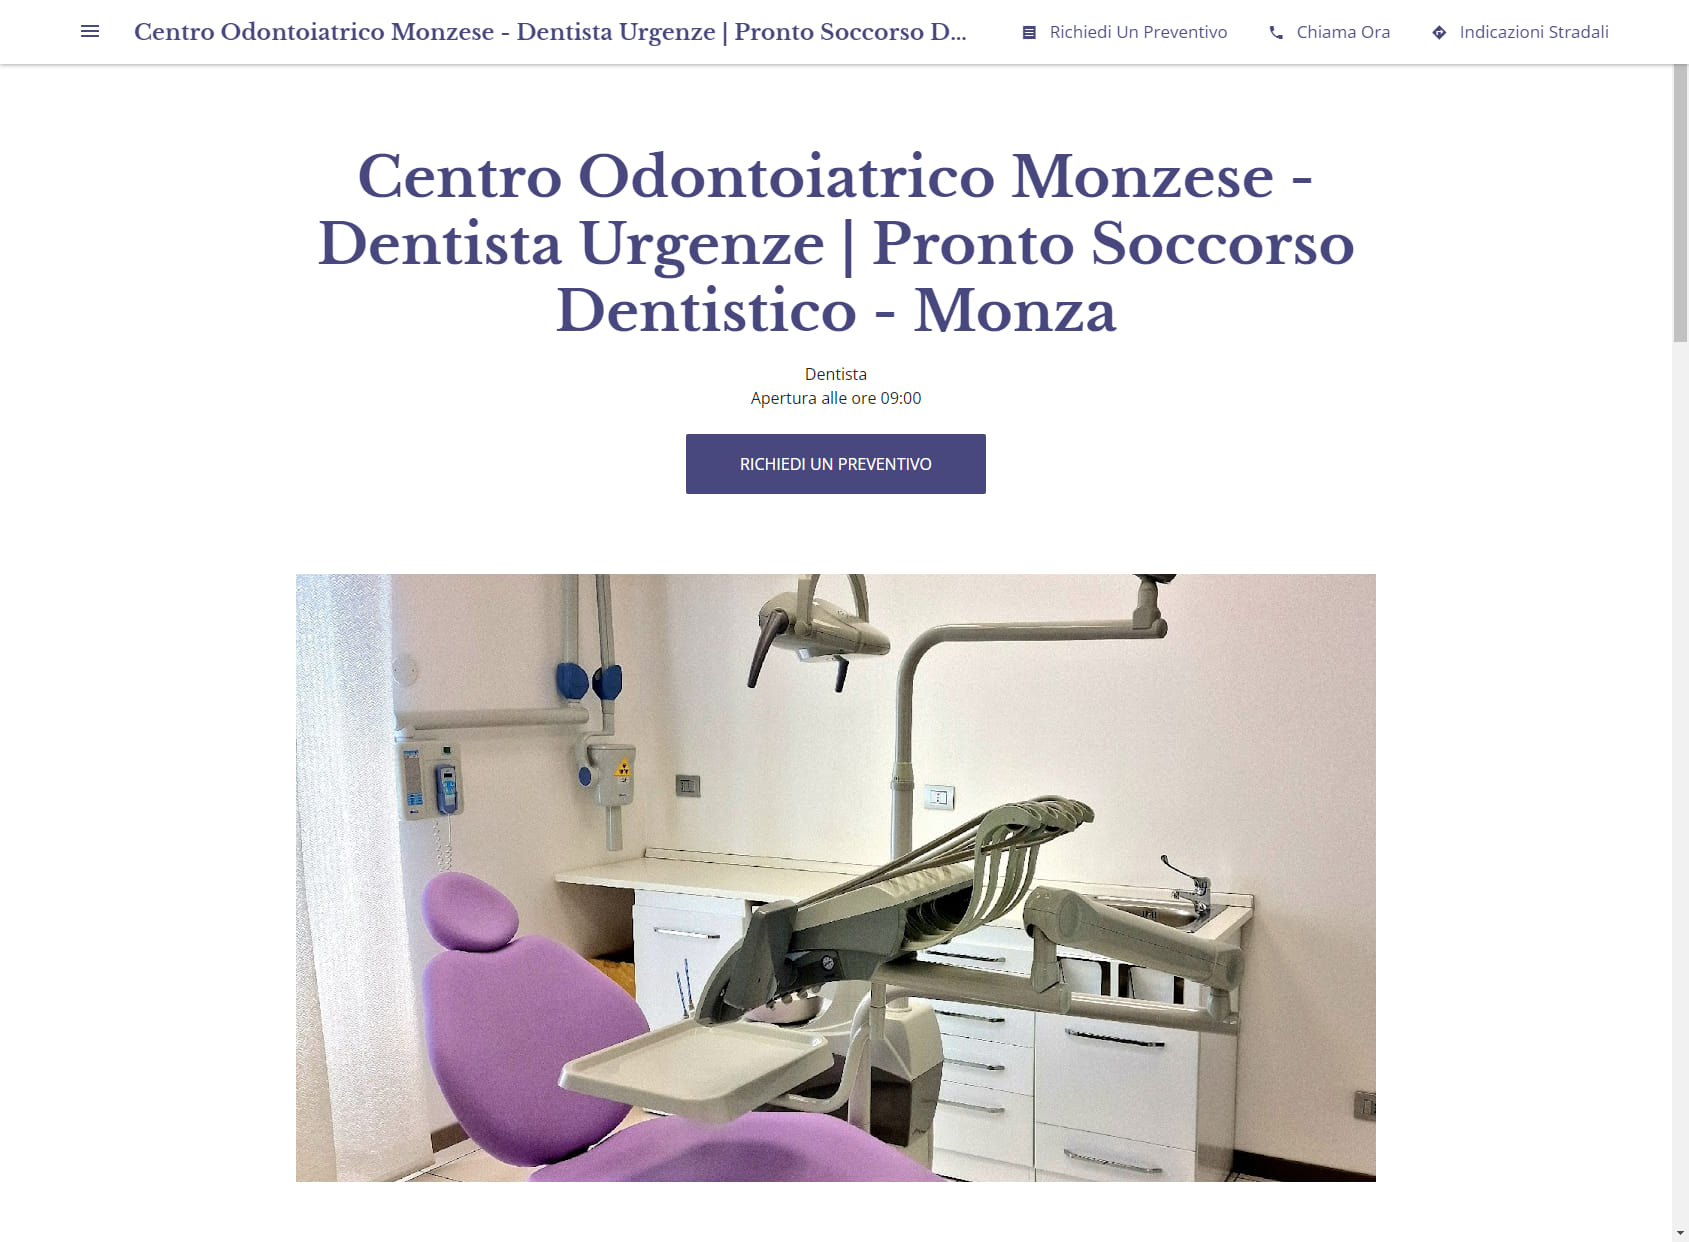 Centro Odontoiatrico Monzese - Dentista Urgenze | Pronto Soccorso Dentistico - Monza